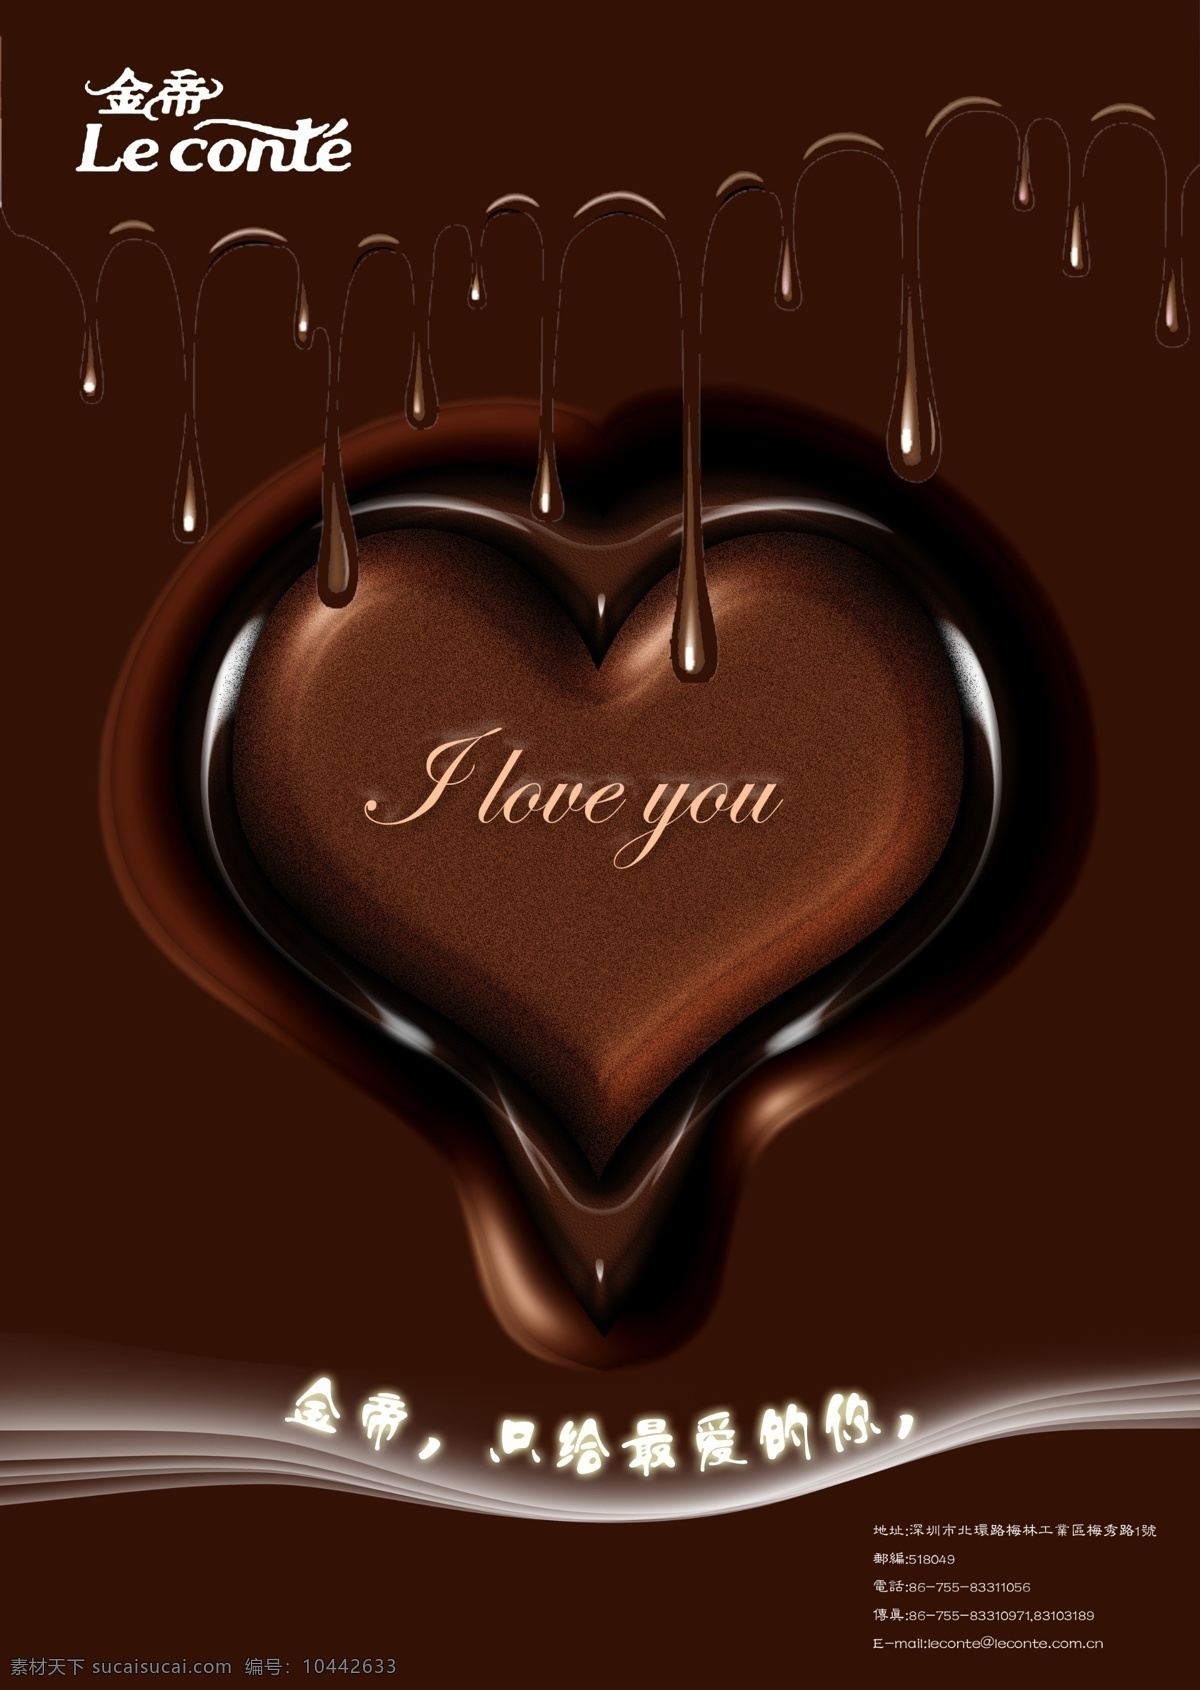 金帝封面 巧克力 浓香 丝滑 甜蜜 巧克力dm单 dm宣传单 广告设计模板 源文件